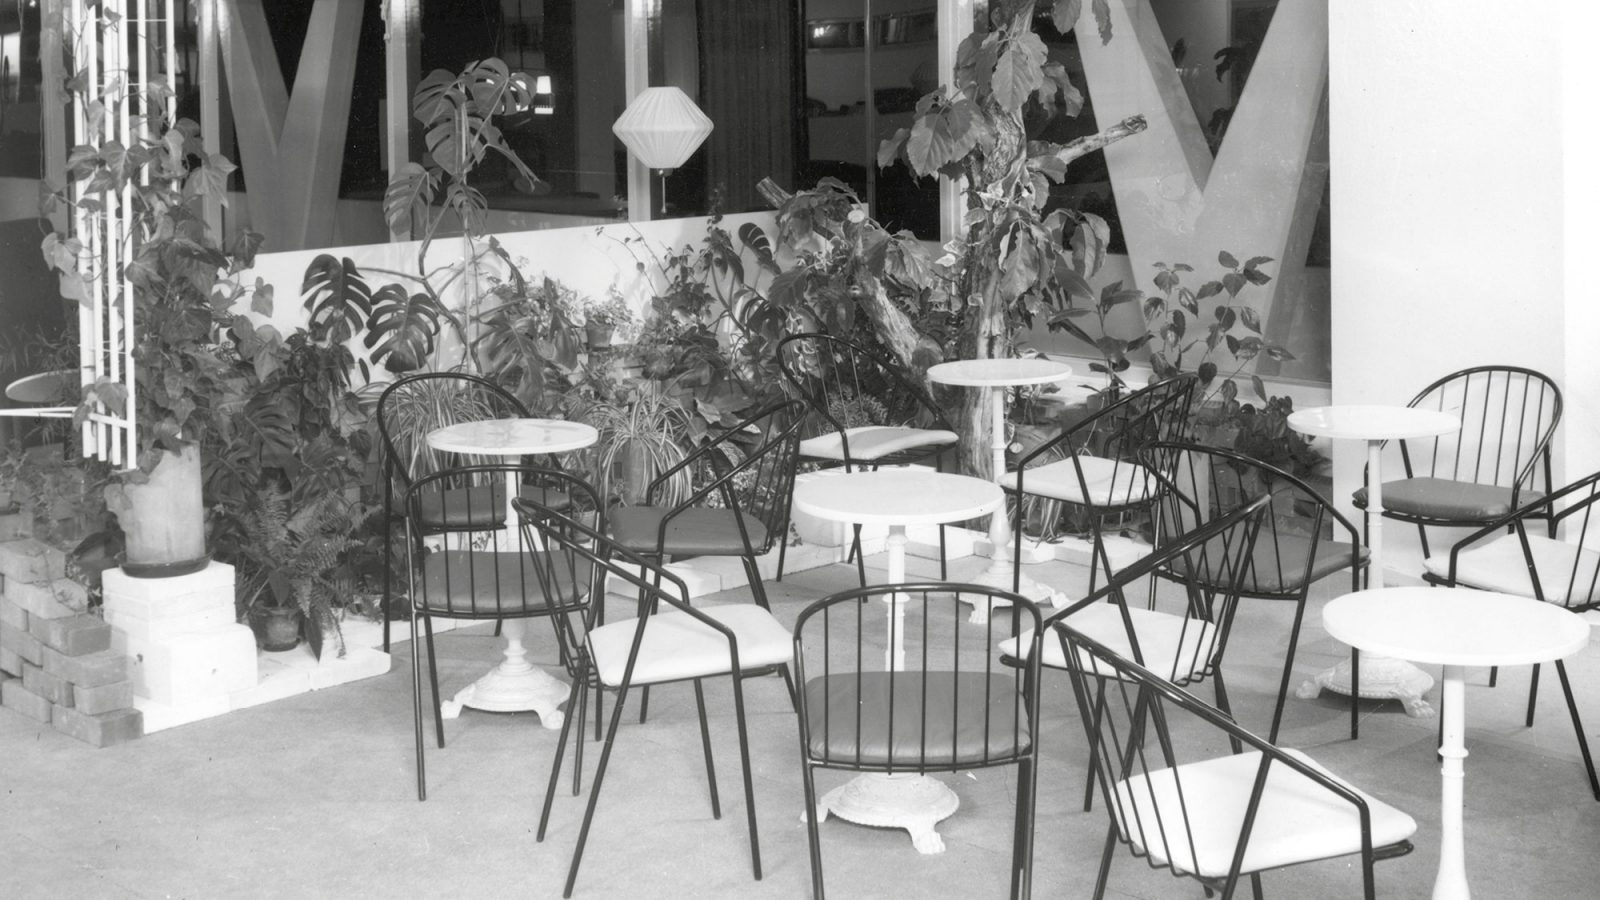 Pequeño café en instalaciones comerciales con sillas negras, mesas blancas y plantas verdes.